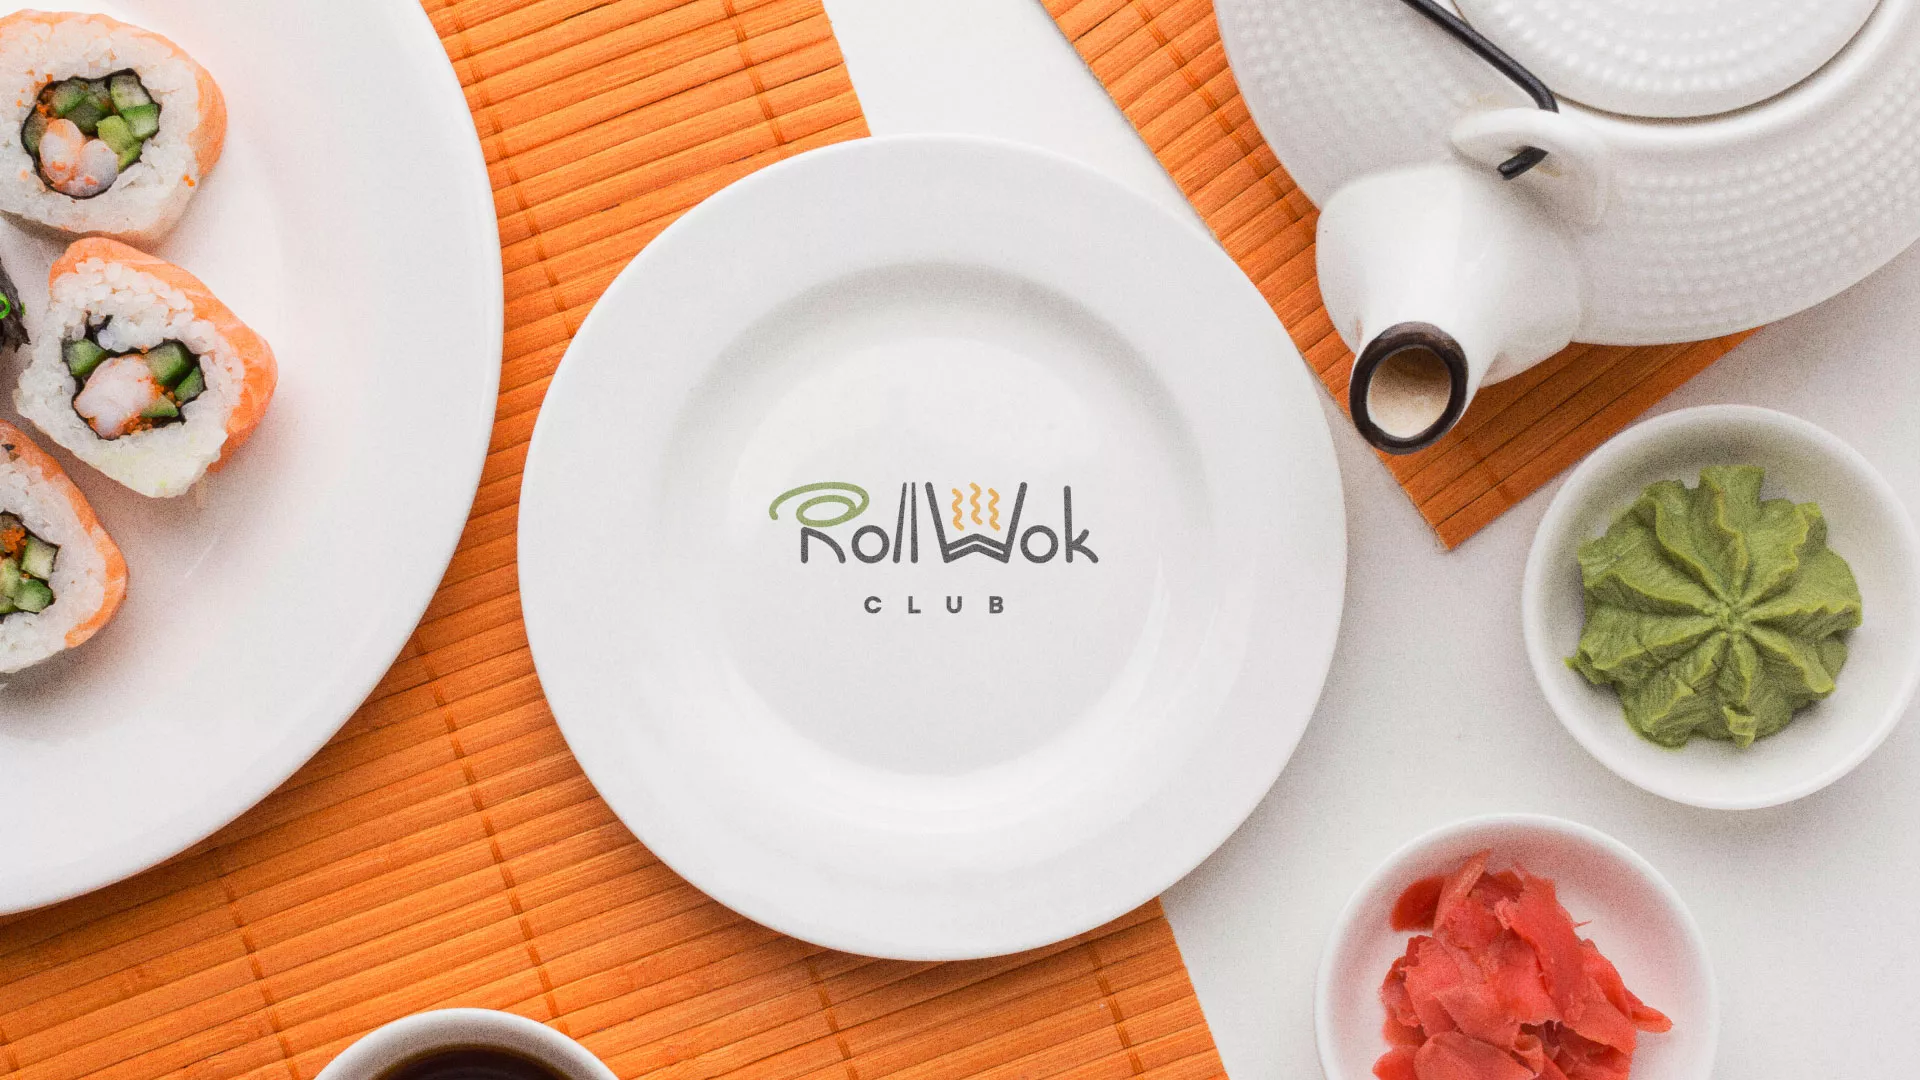 Разработка логотипа и фирменного стиля суши-бара «Roll Wok Club» в Великом Новгороде